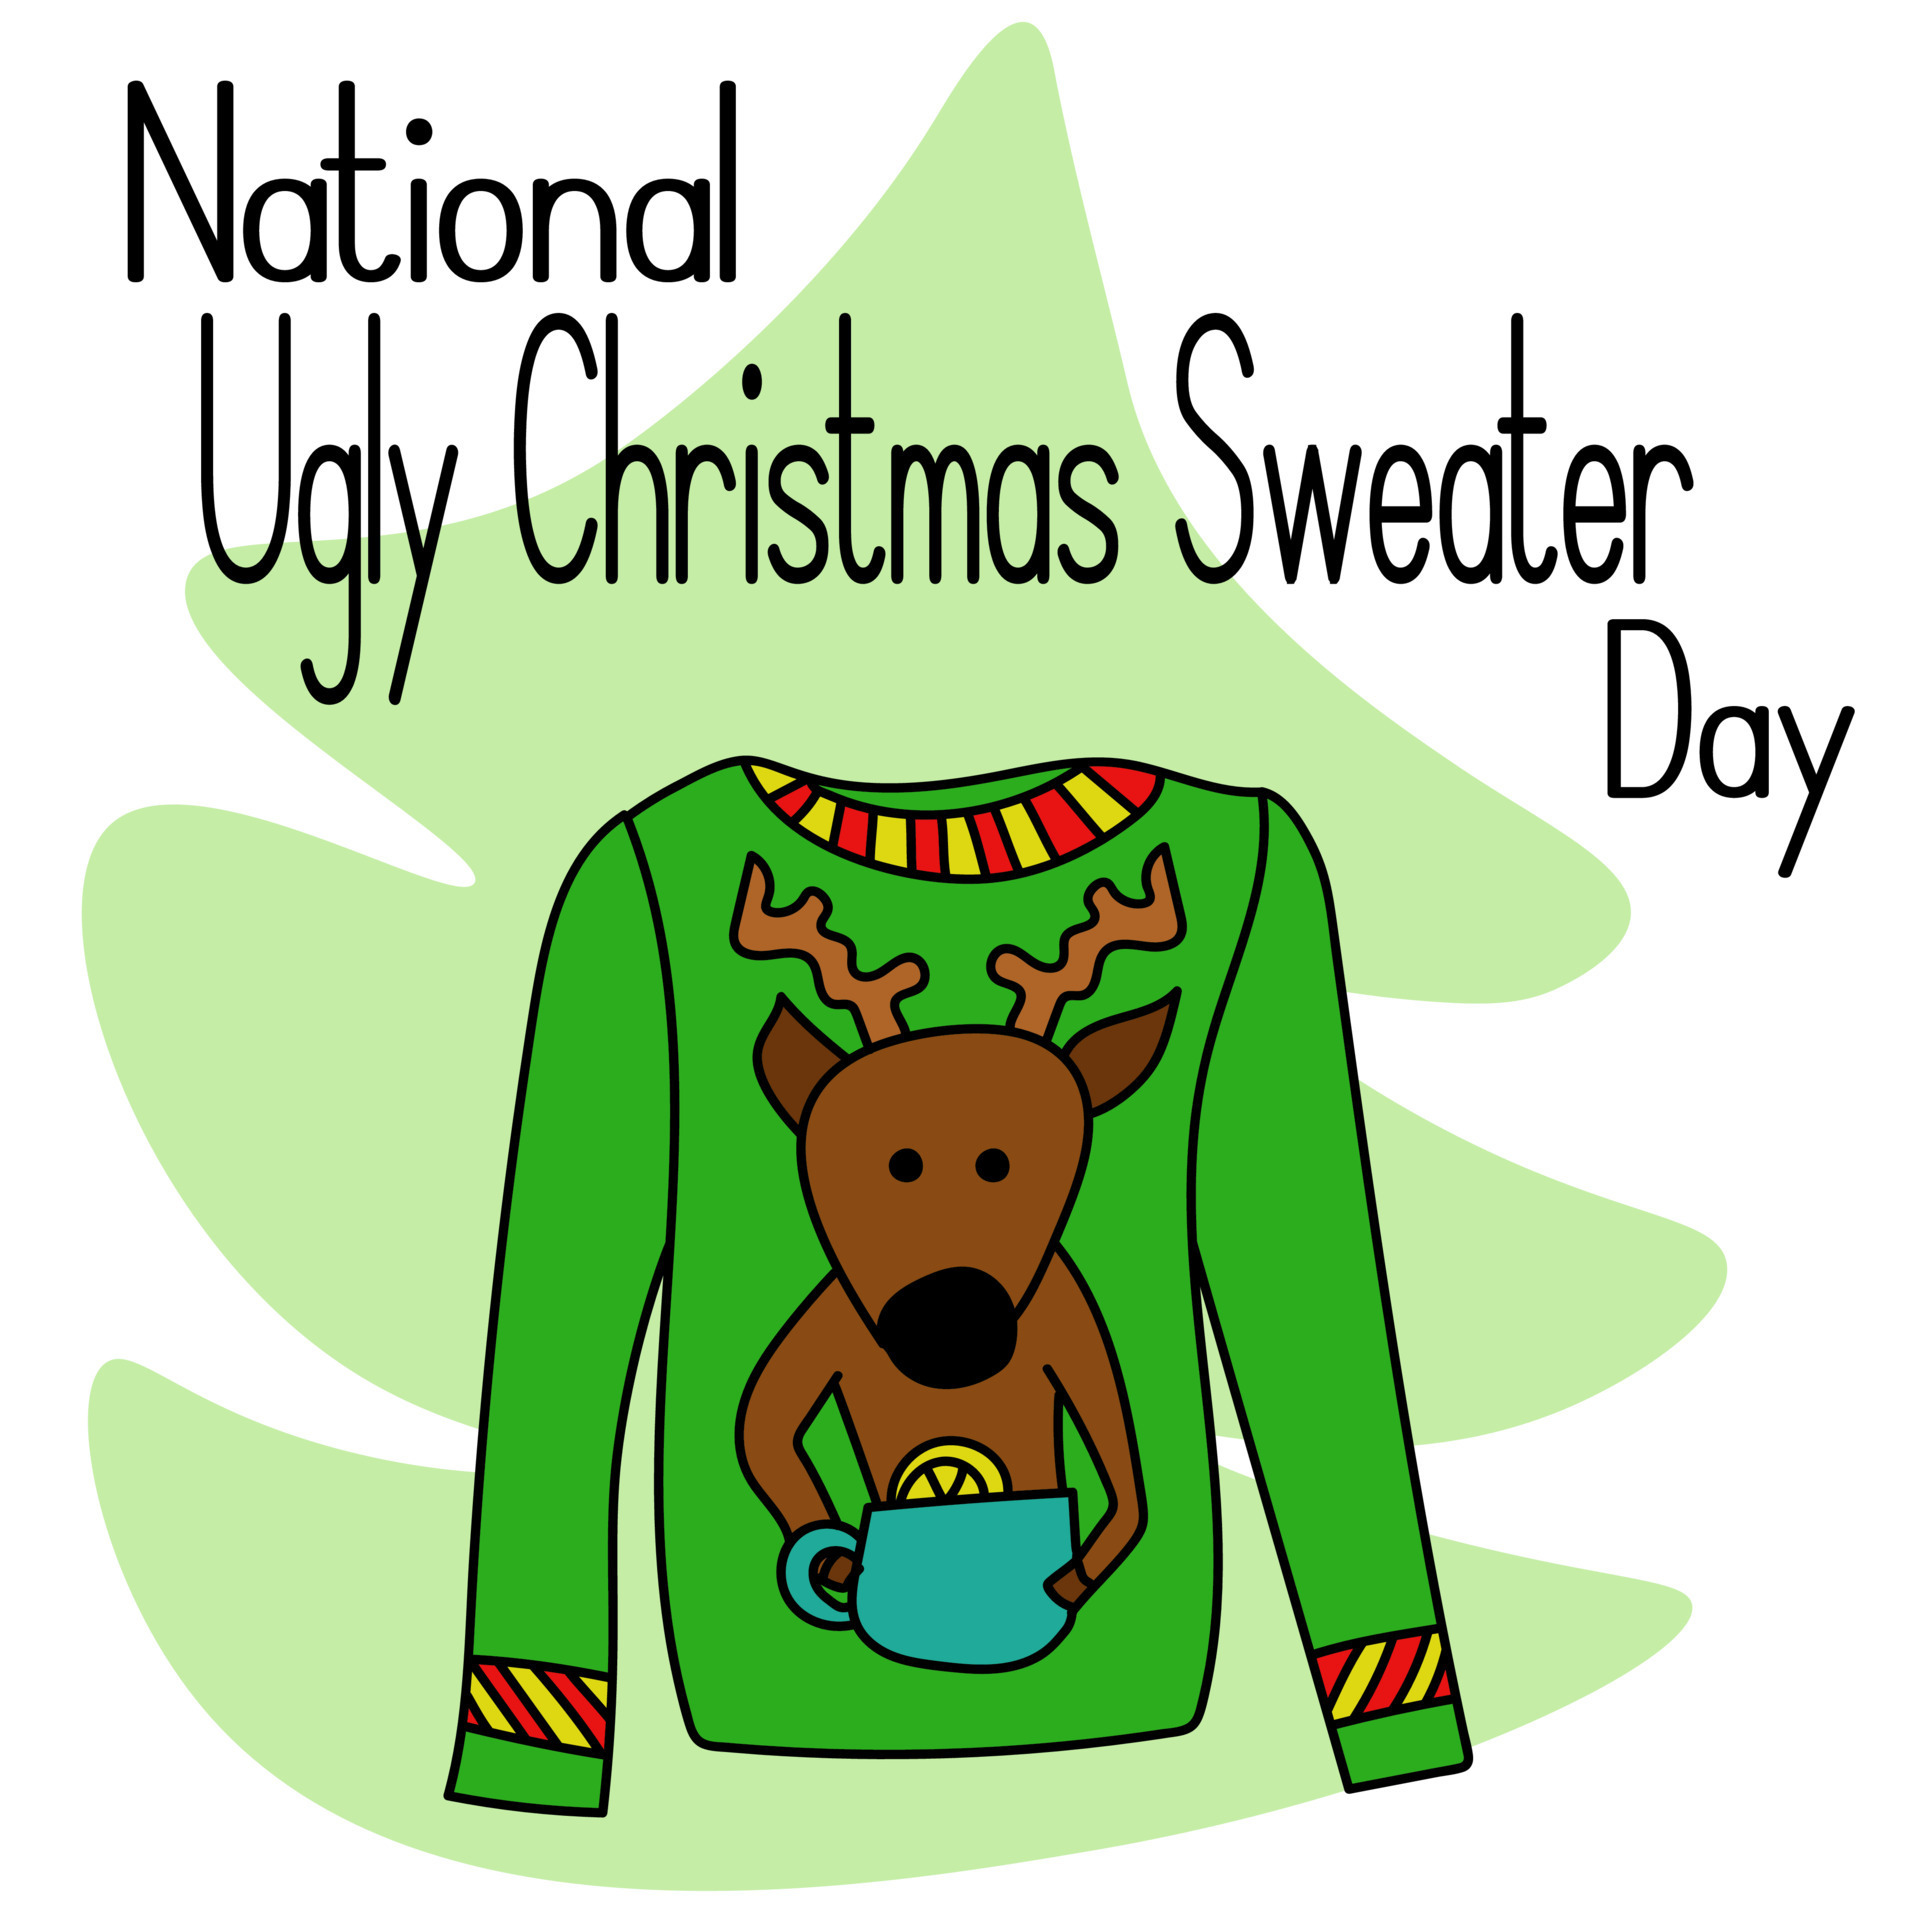 dia nacional do suéter de natal feio, ideia para pôster, banner